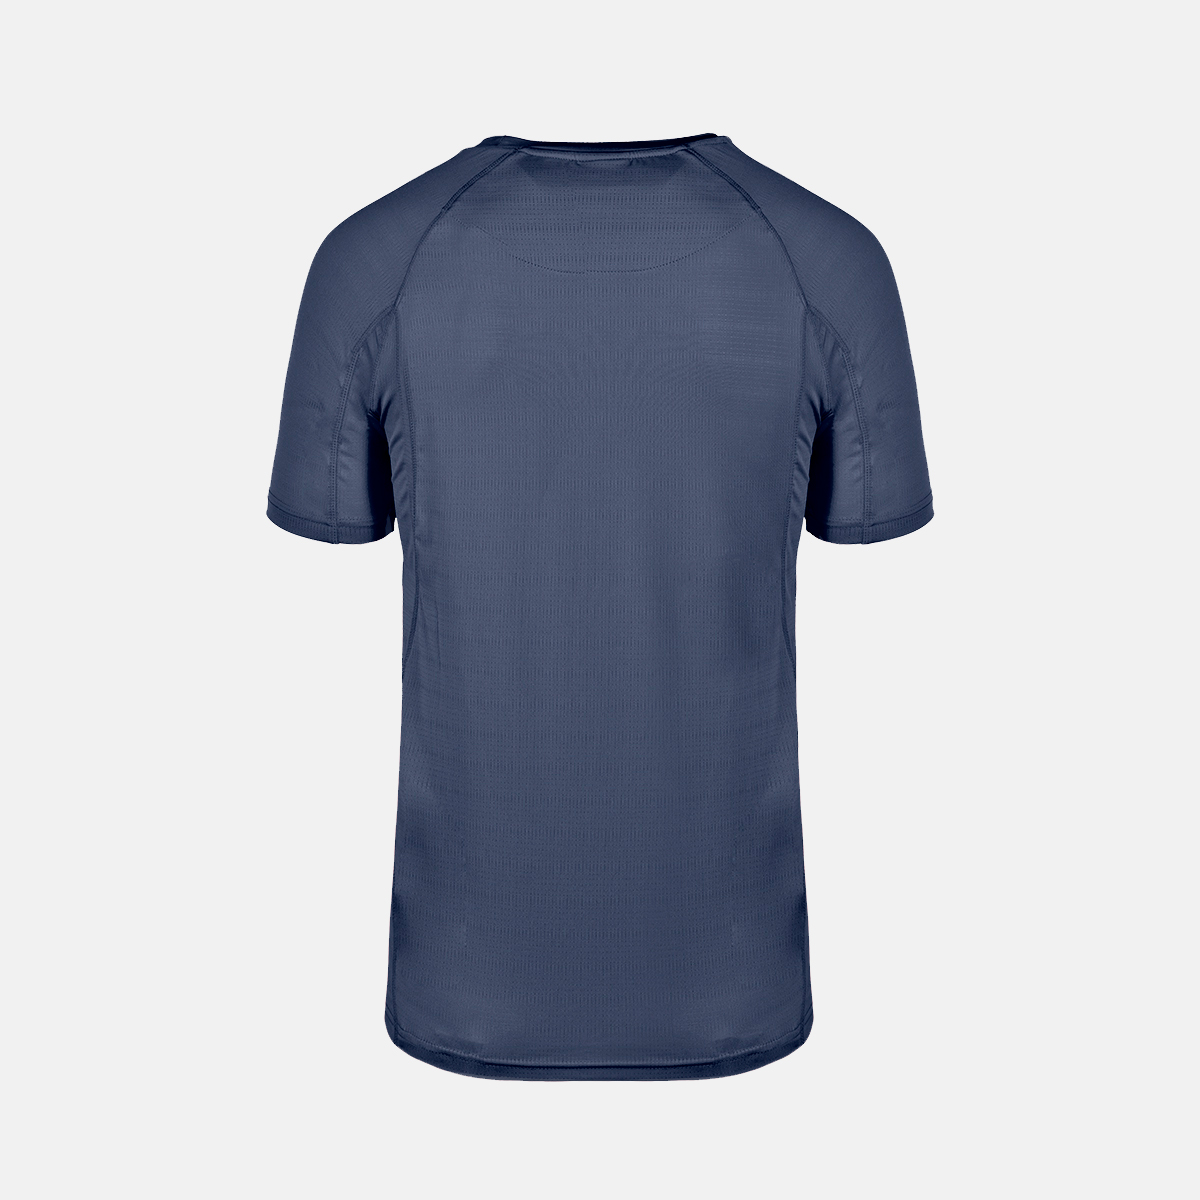  technical short-sleeved t-shirt for men ategua